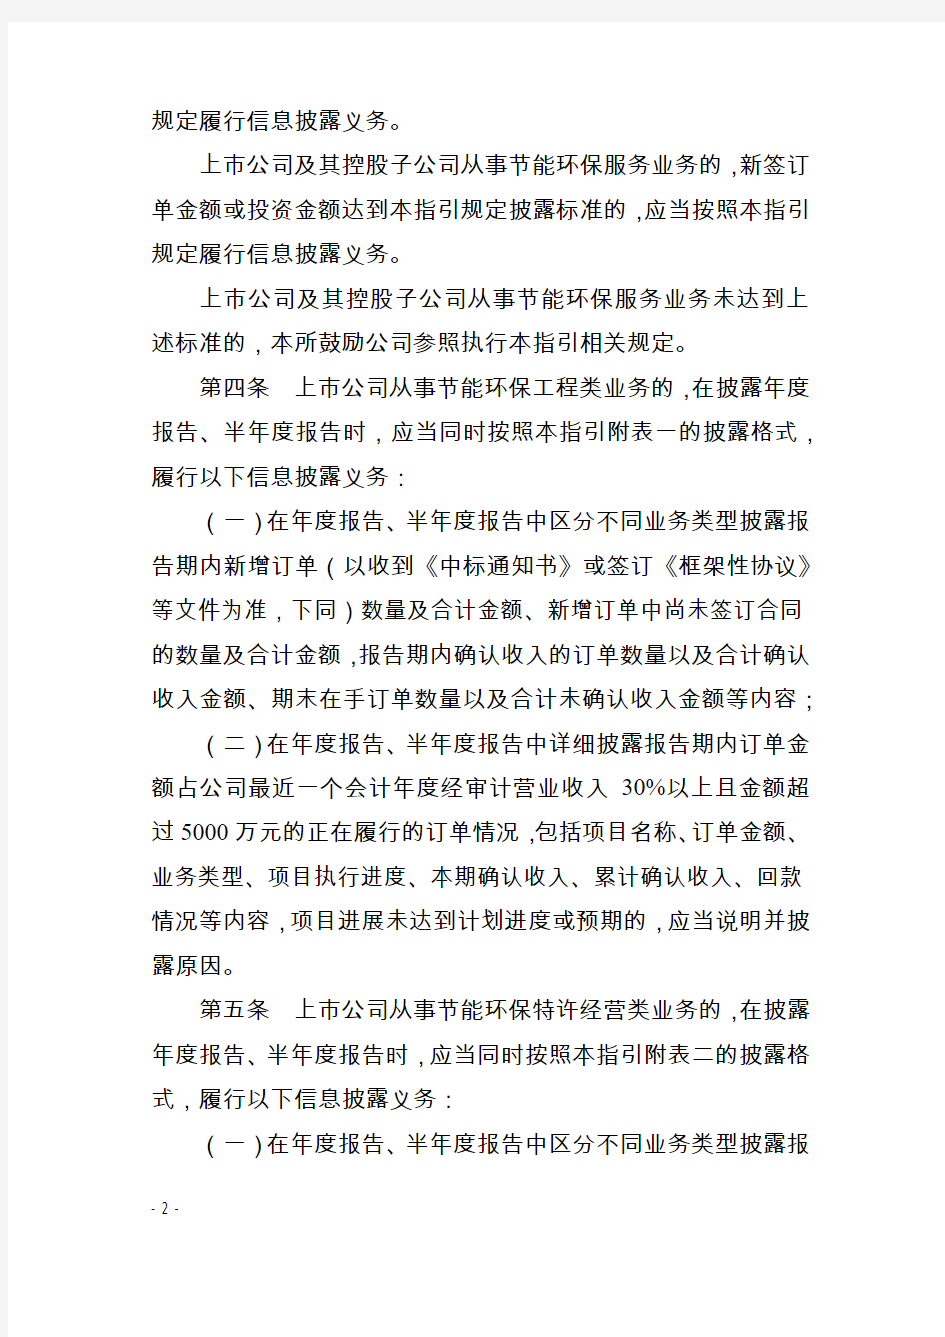 《深圳证券交易所创业板行业信息披露指引第4号——上市公司从事节能环保服务业务(2019年修订)》